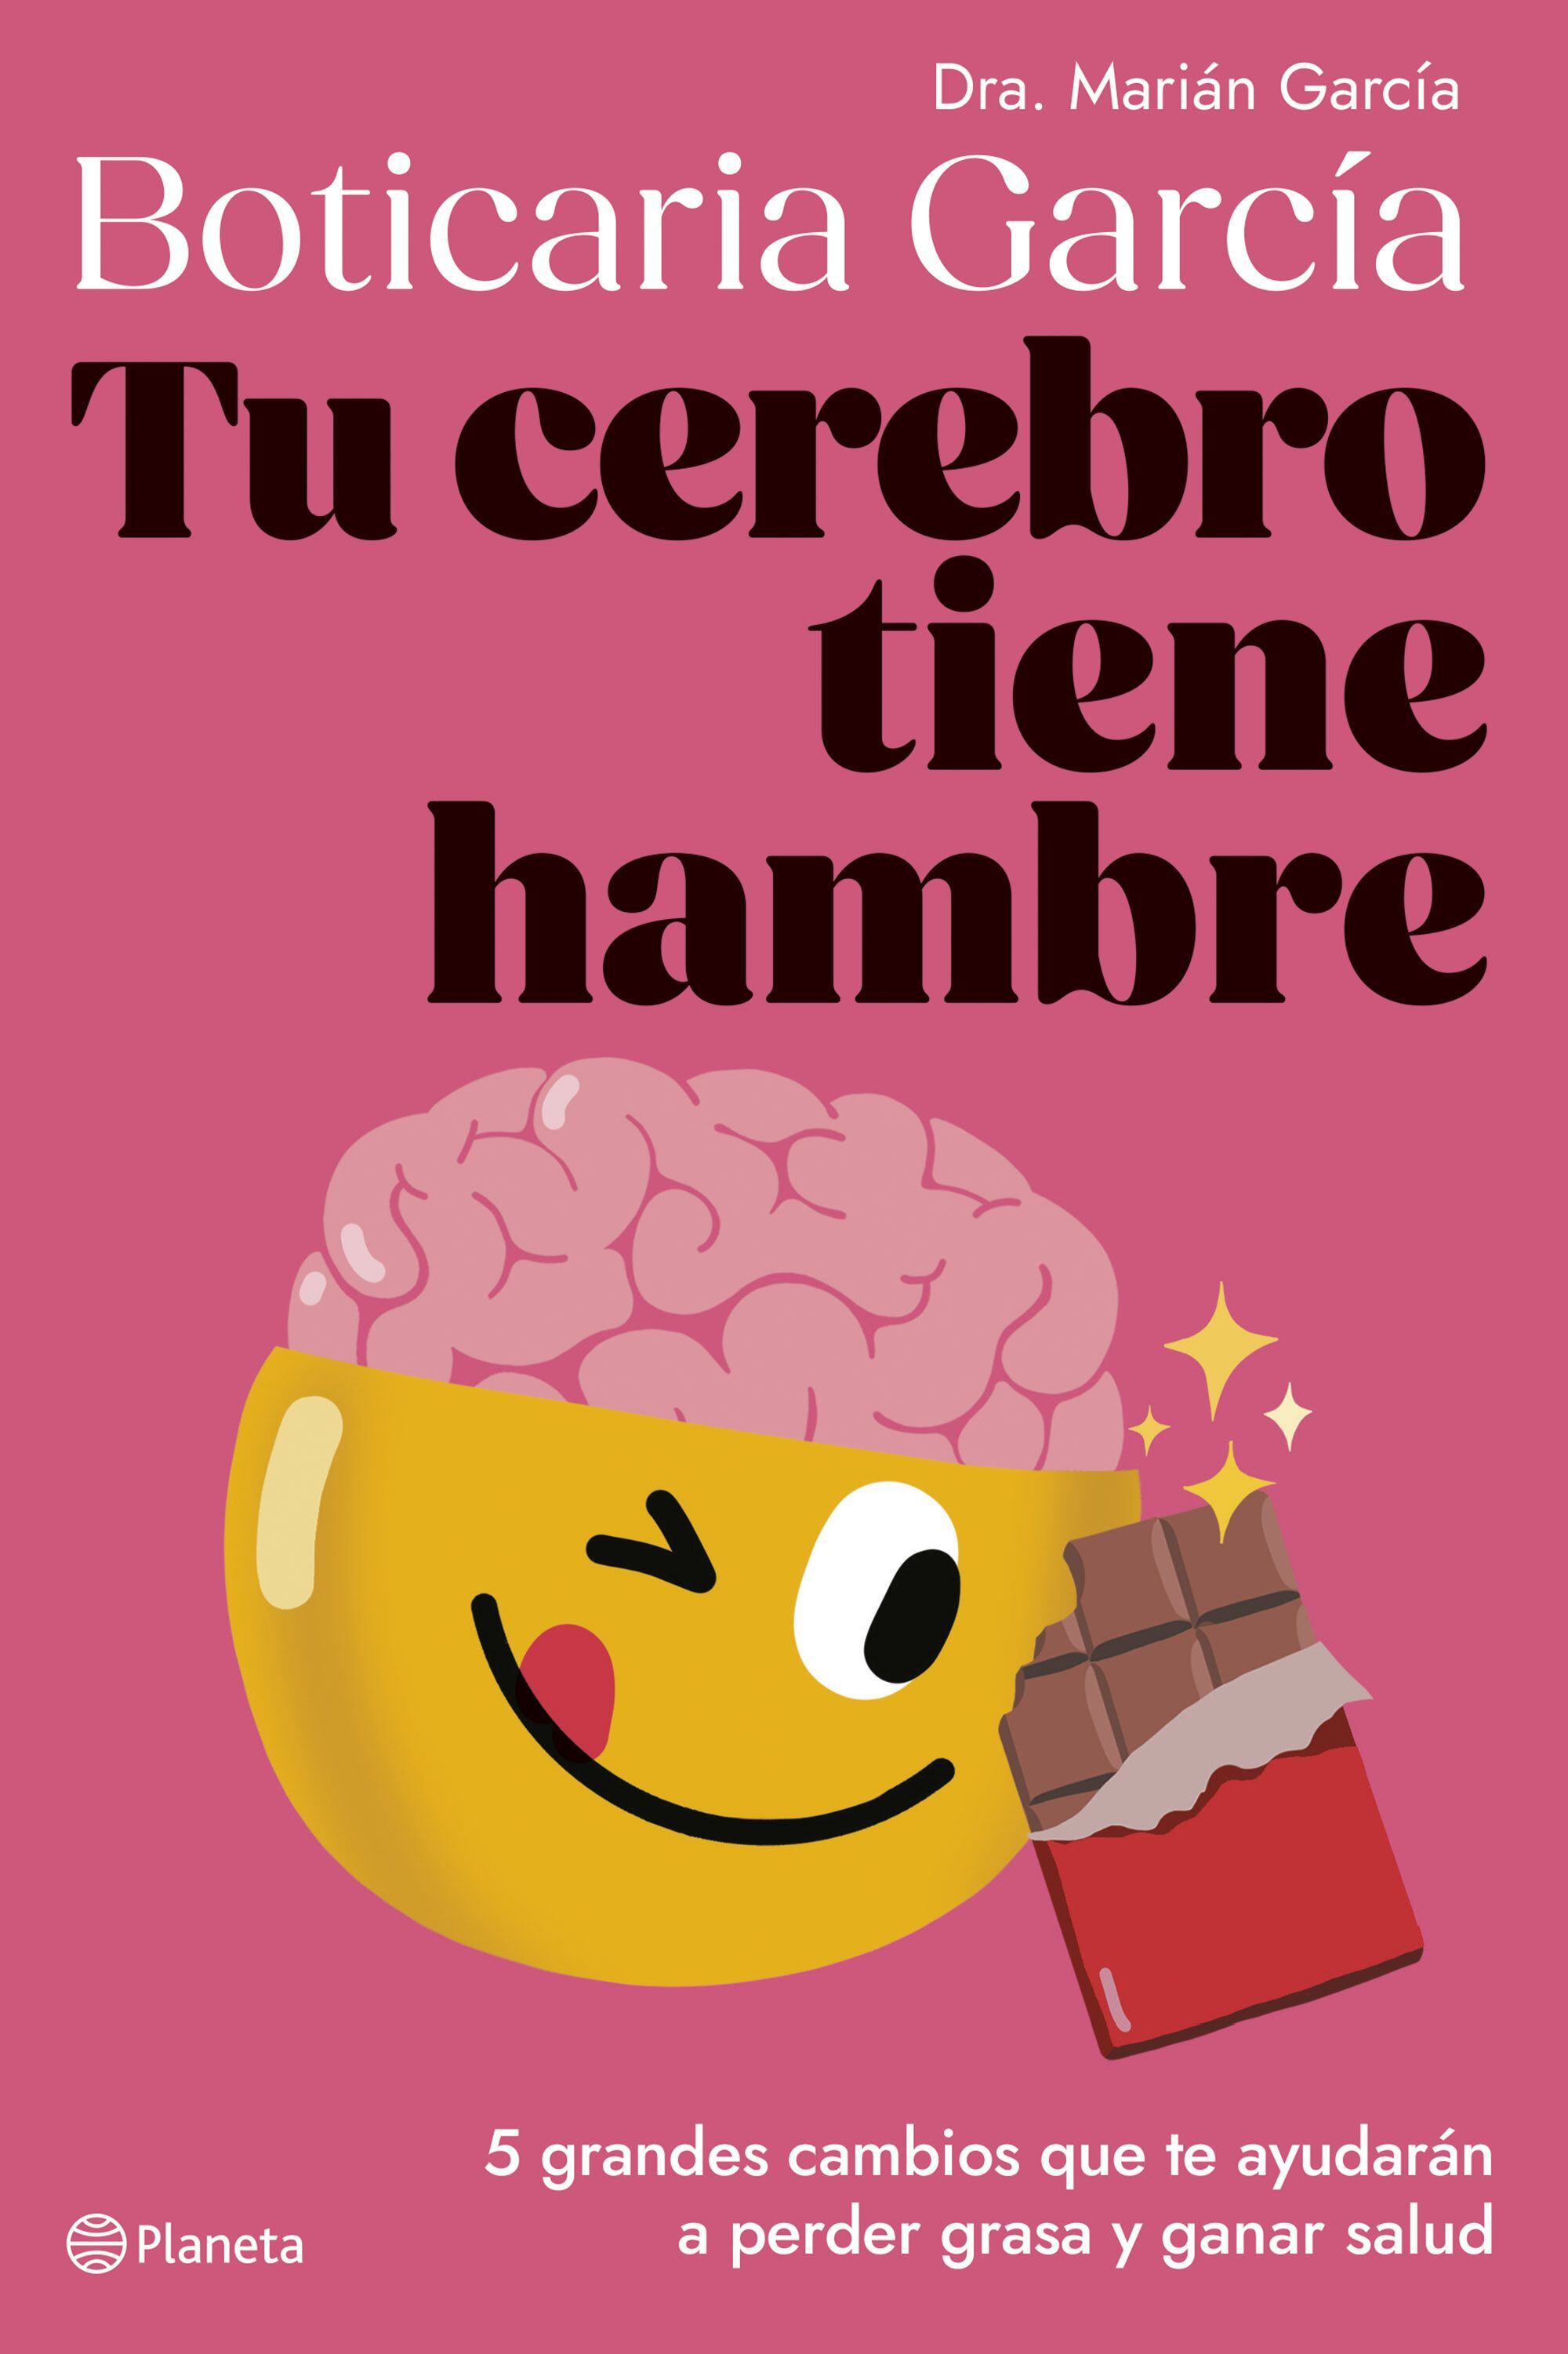 Portada de 'Tu cerebro tiene hambre', de Boticaria García (Dra. Marián García), editado por Planeta.